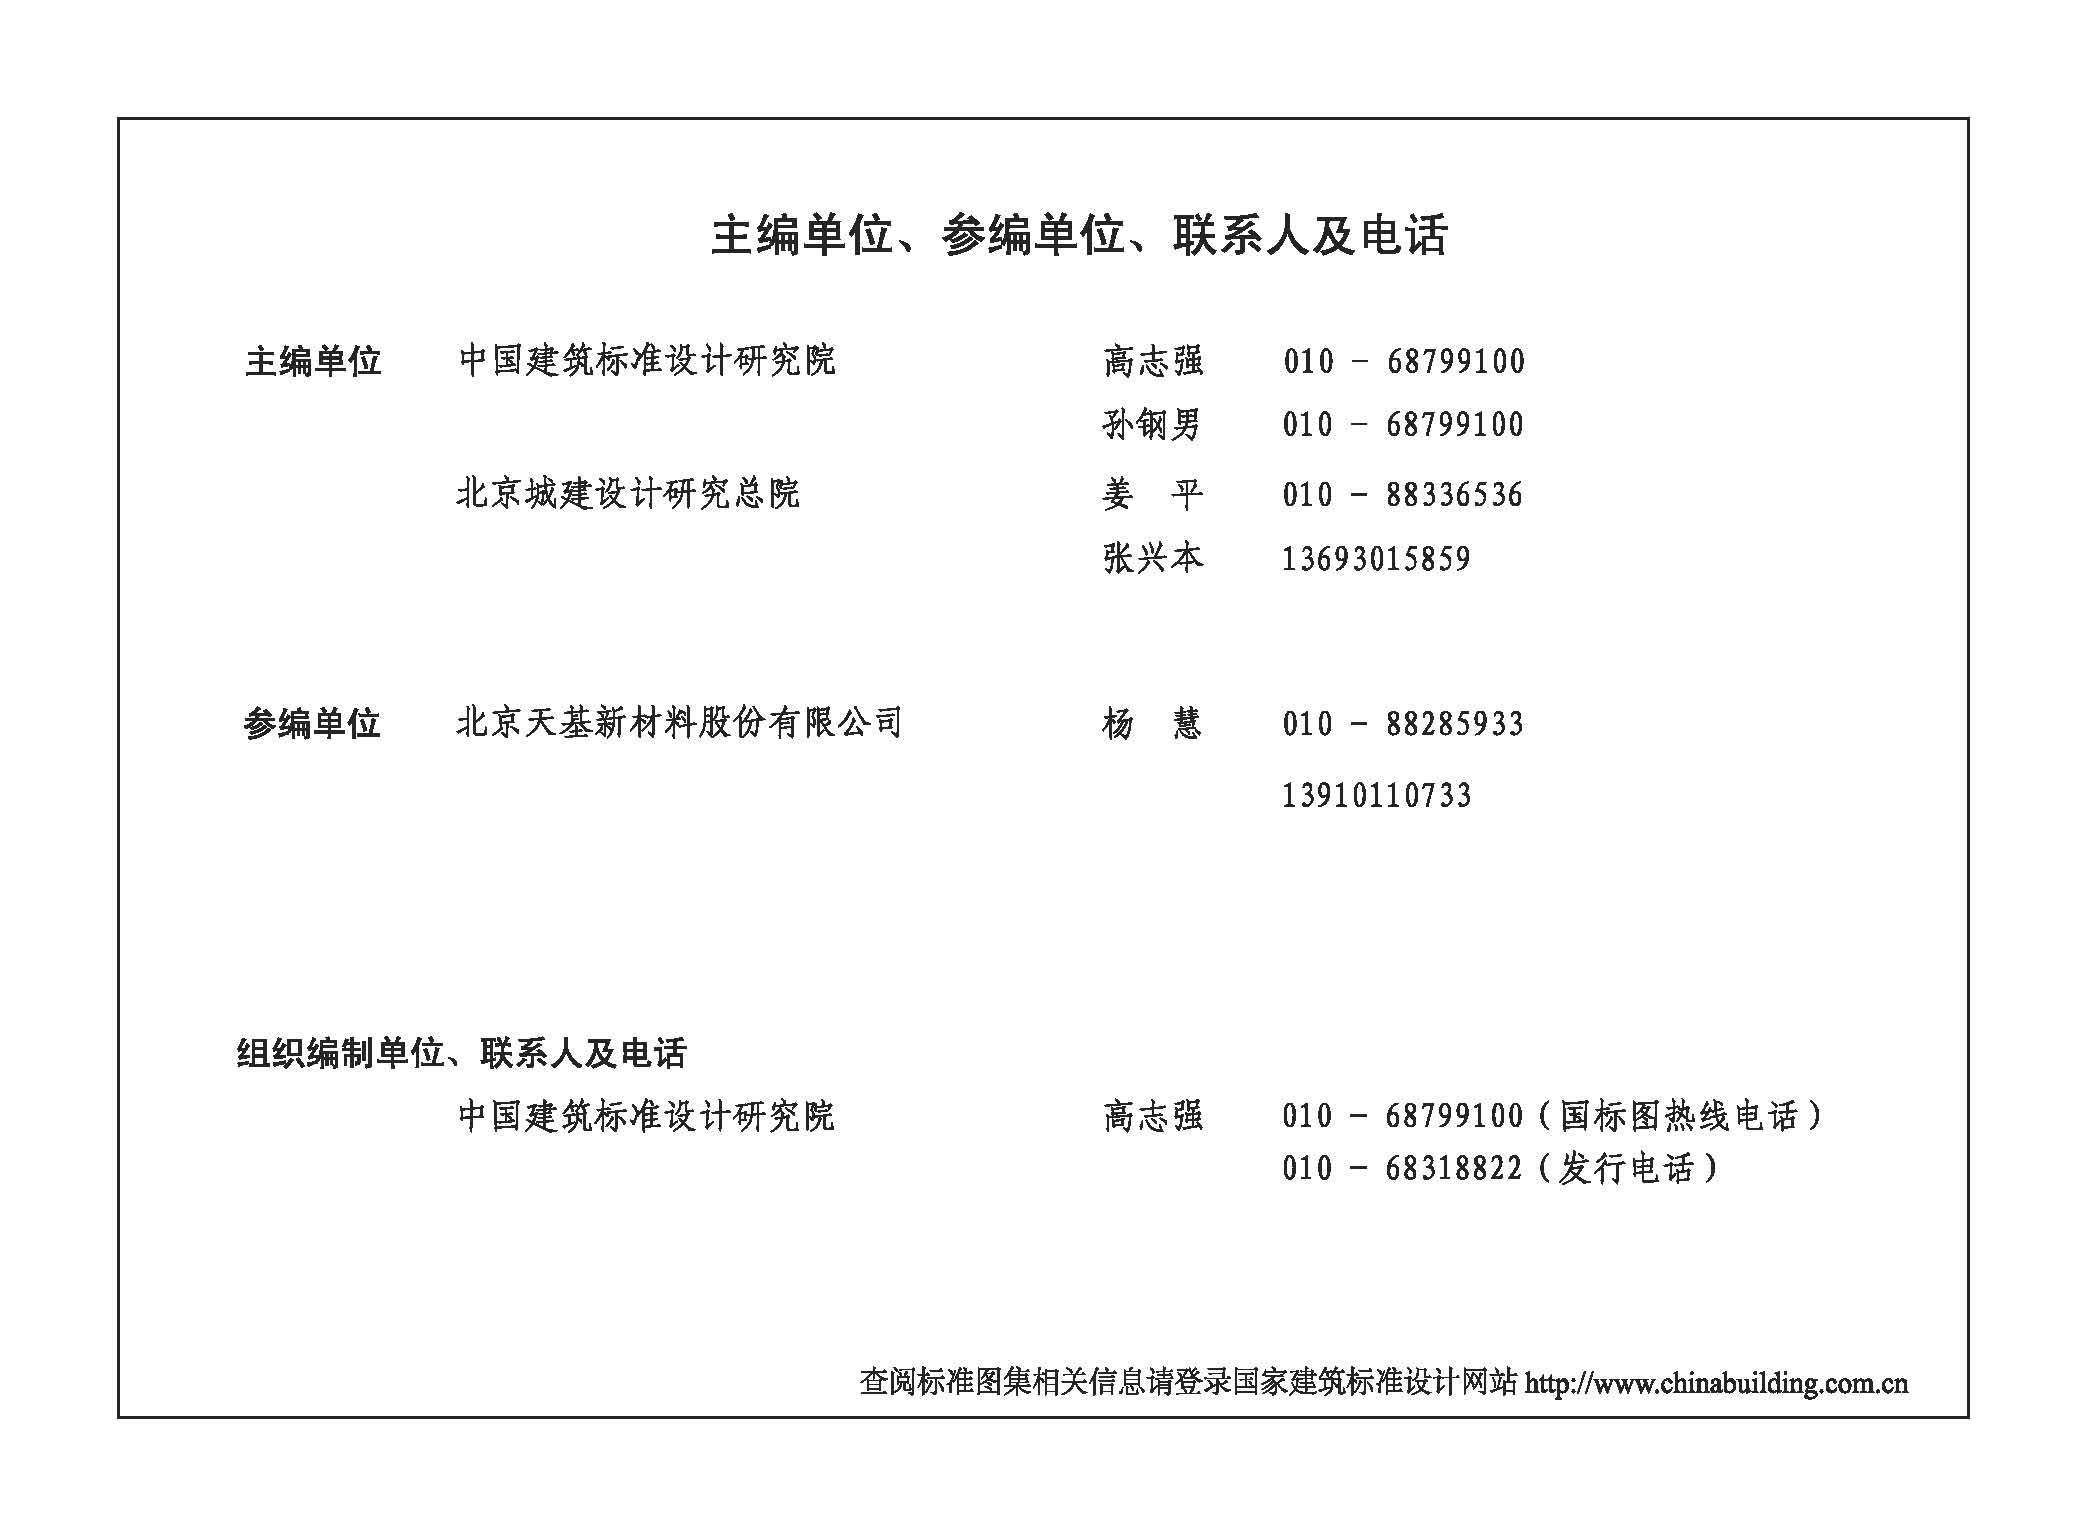 圖集內頁標明北京天基是參編單位